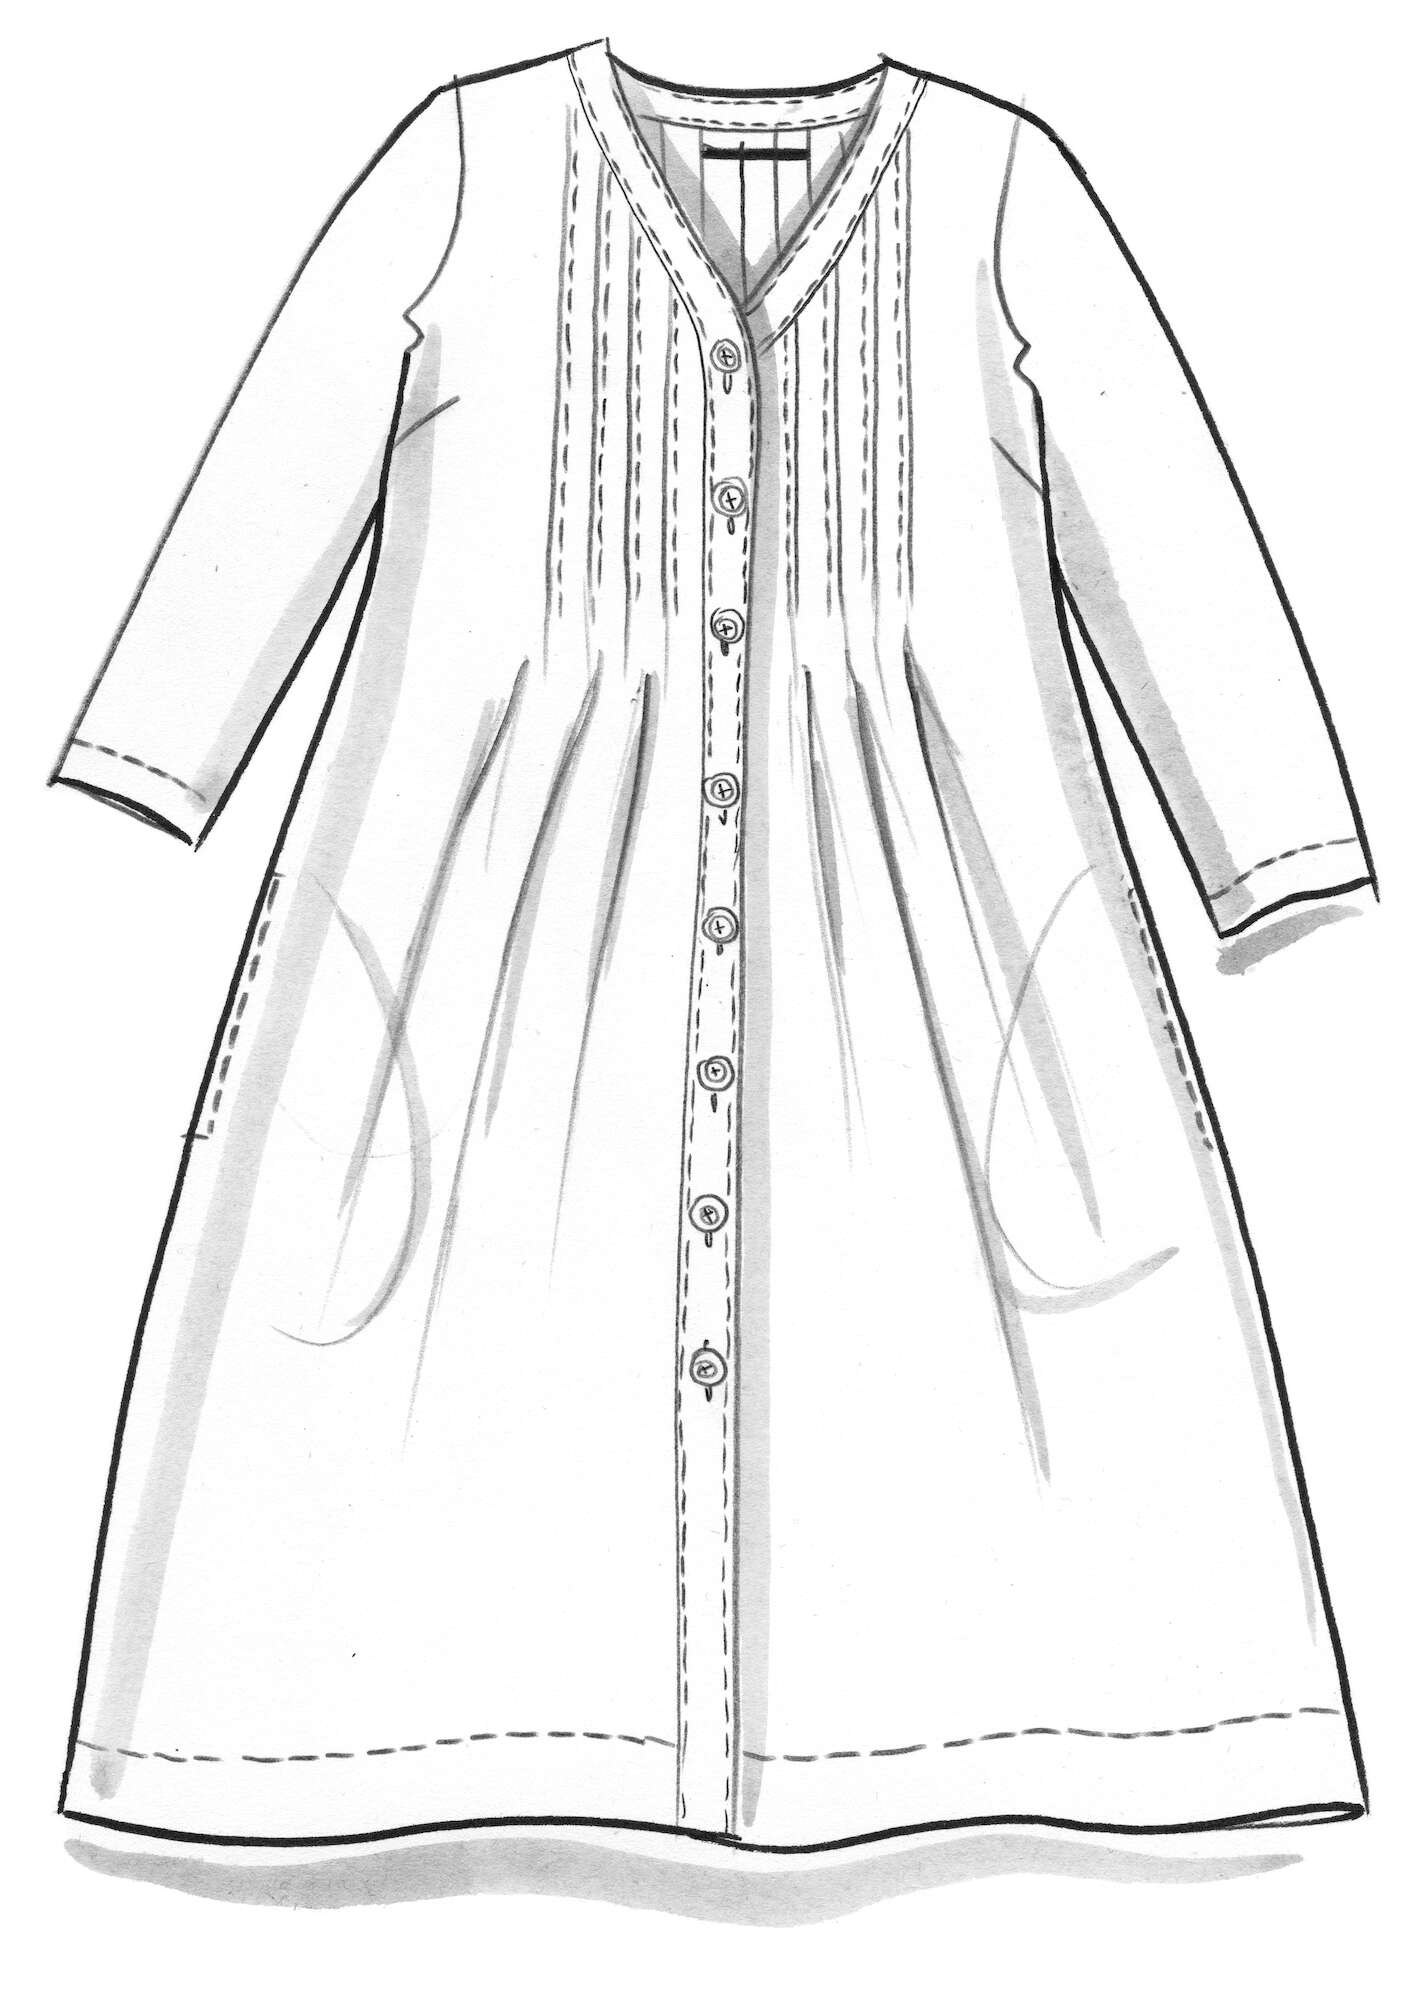 “Malören” woven dress in linen